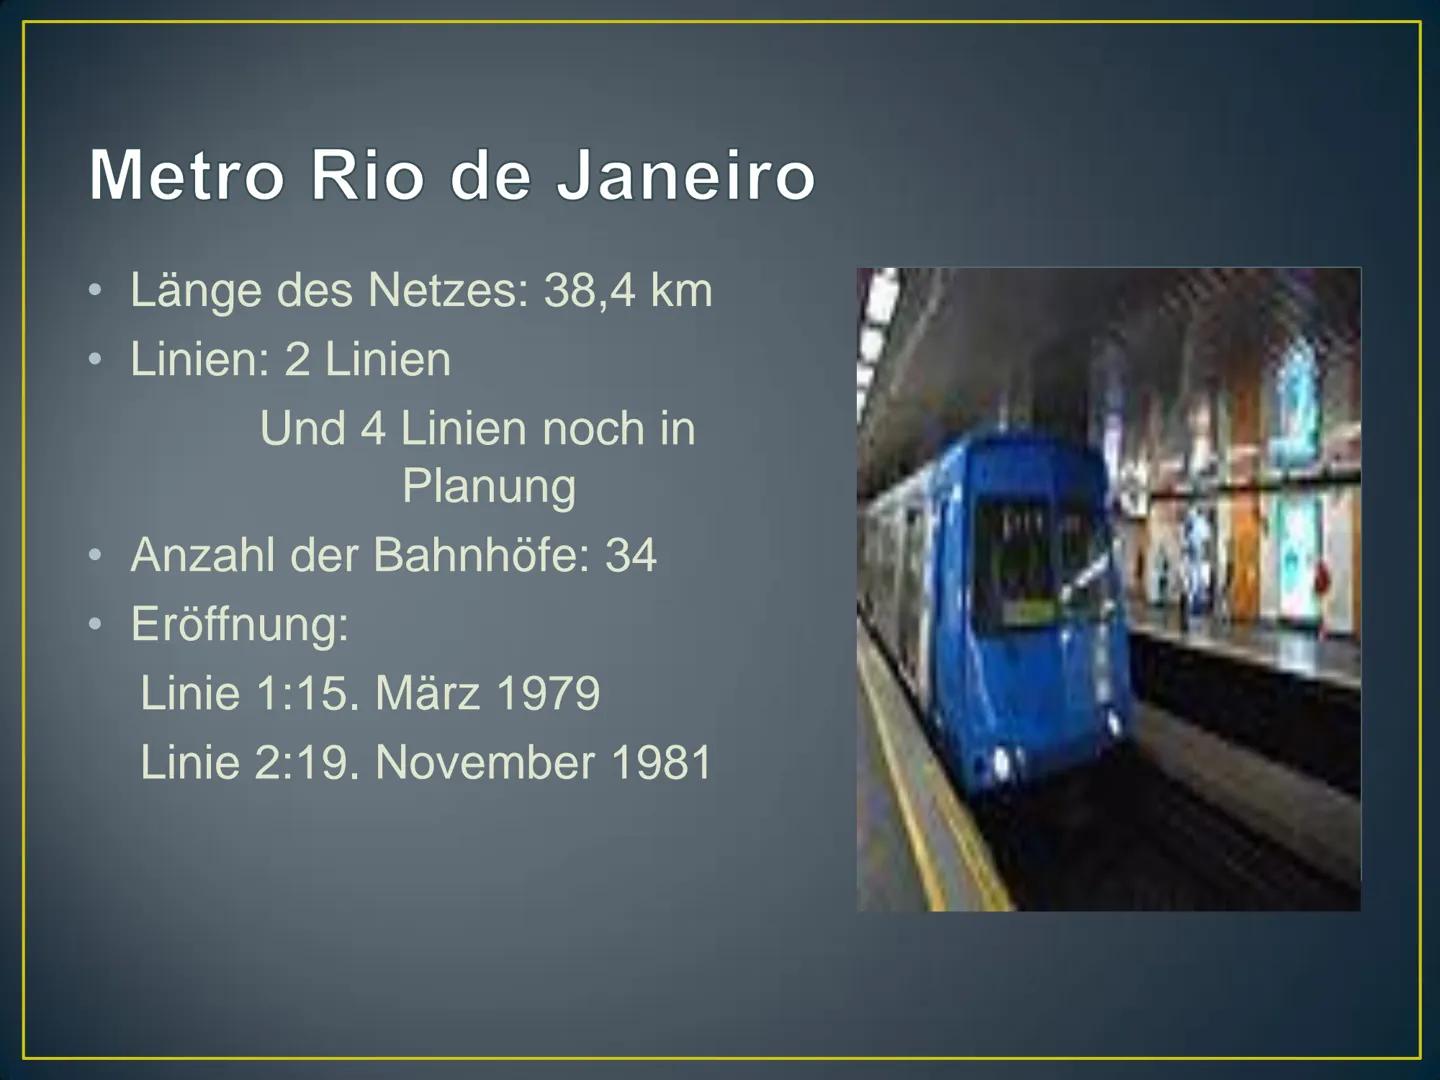 Rio de Janeiro
Herzlich Willkommen! Kurzdaten zur Stadt
●
●
●
●
Land: Brasilien
Einwohnerzahl: 6.429.923 Einwohner
Fläche: 1182km²
Sprache: 